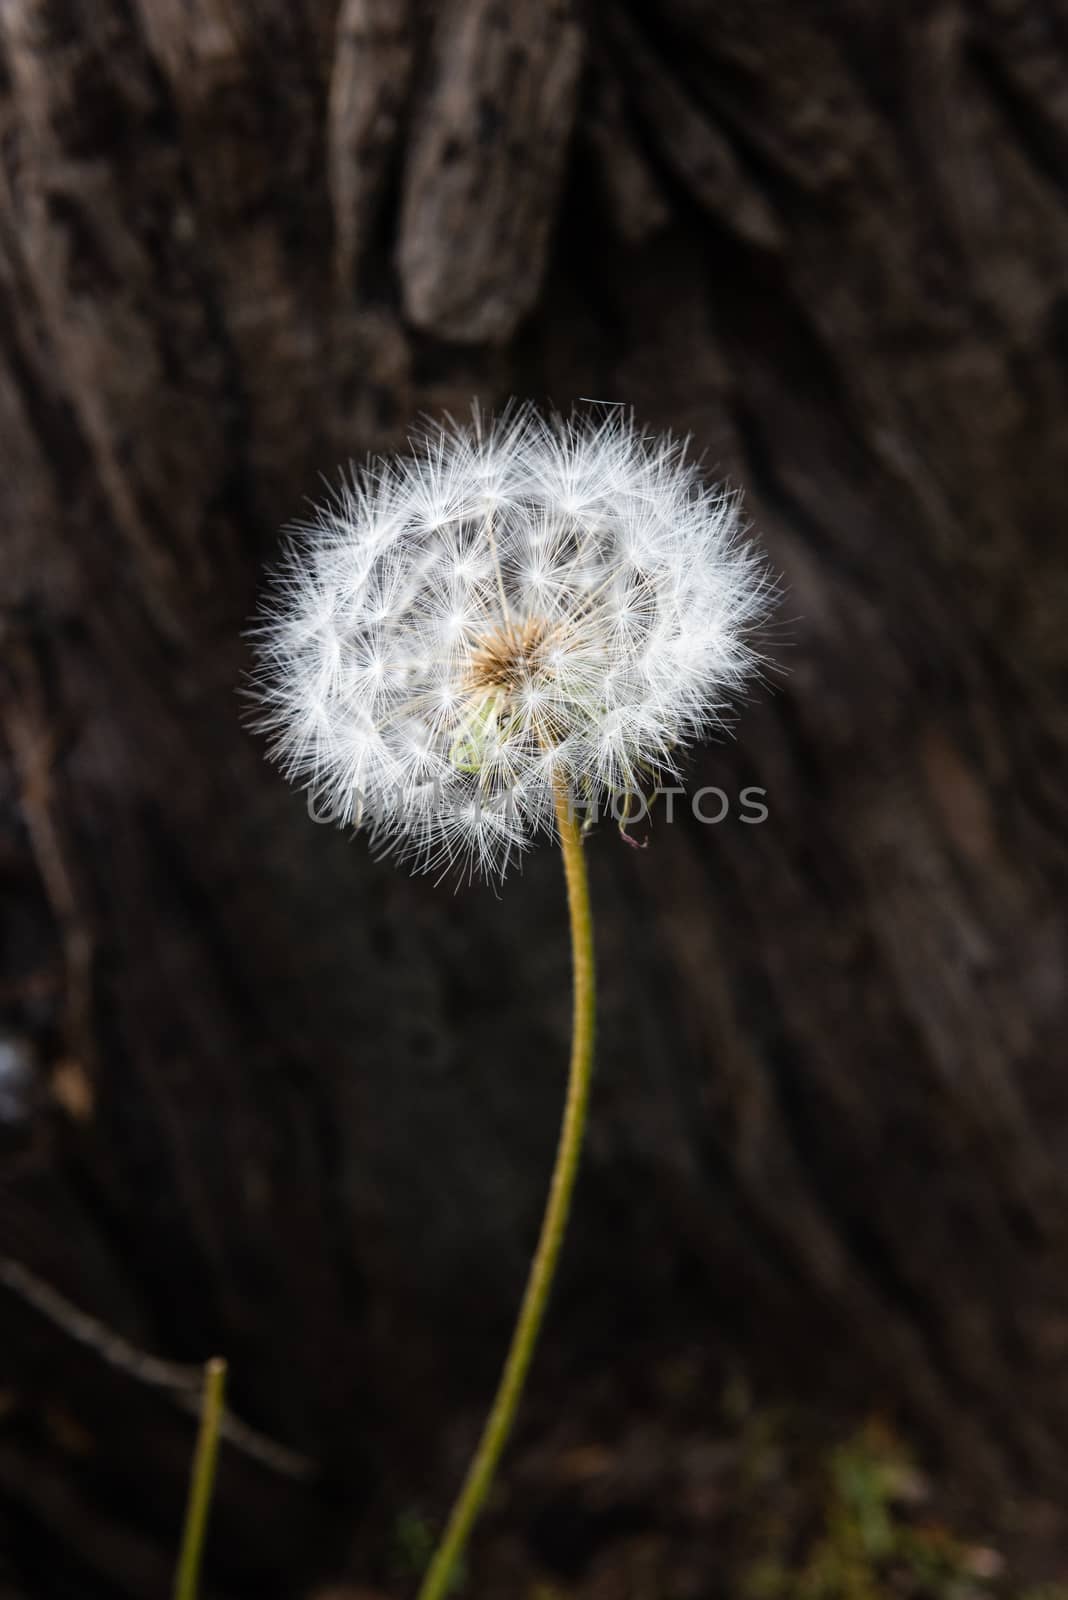 dandelion seed head (Taraxacum)